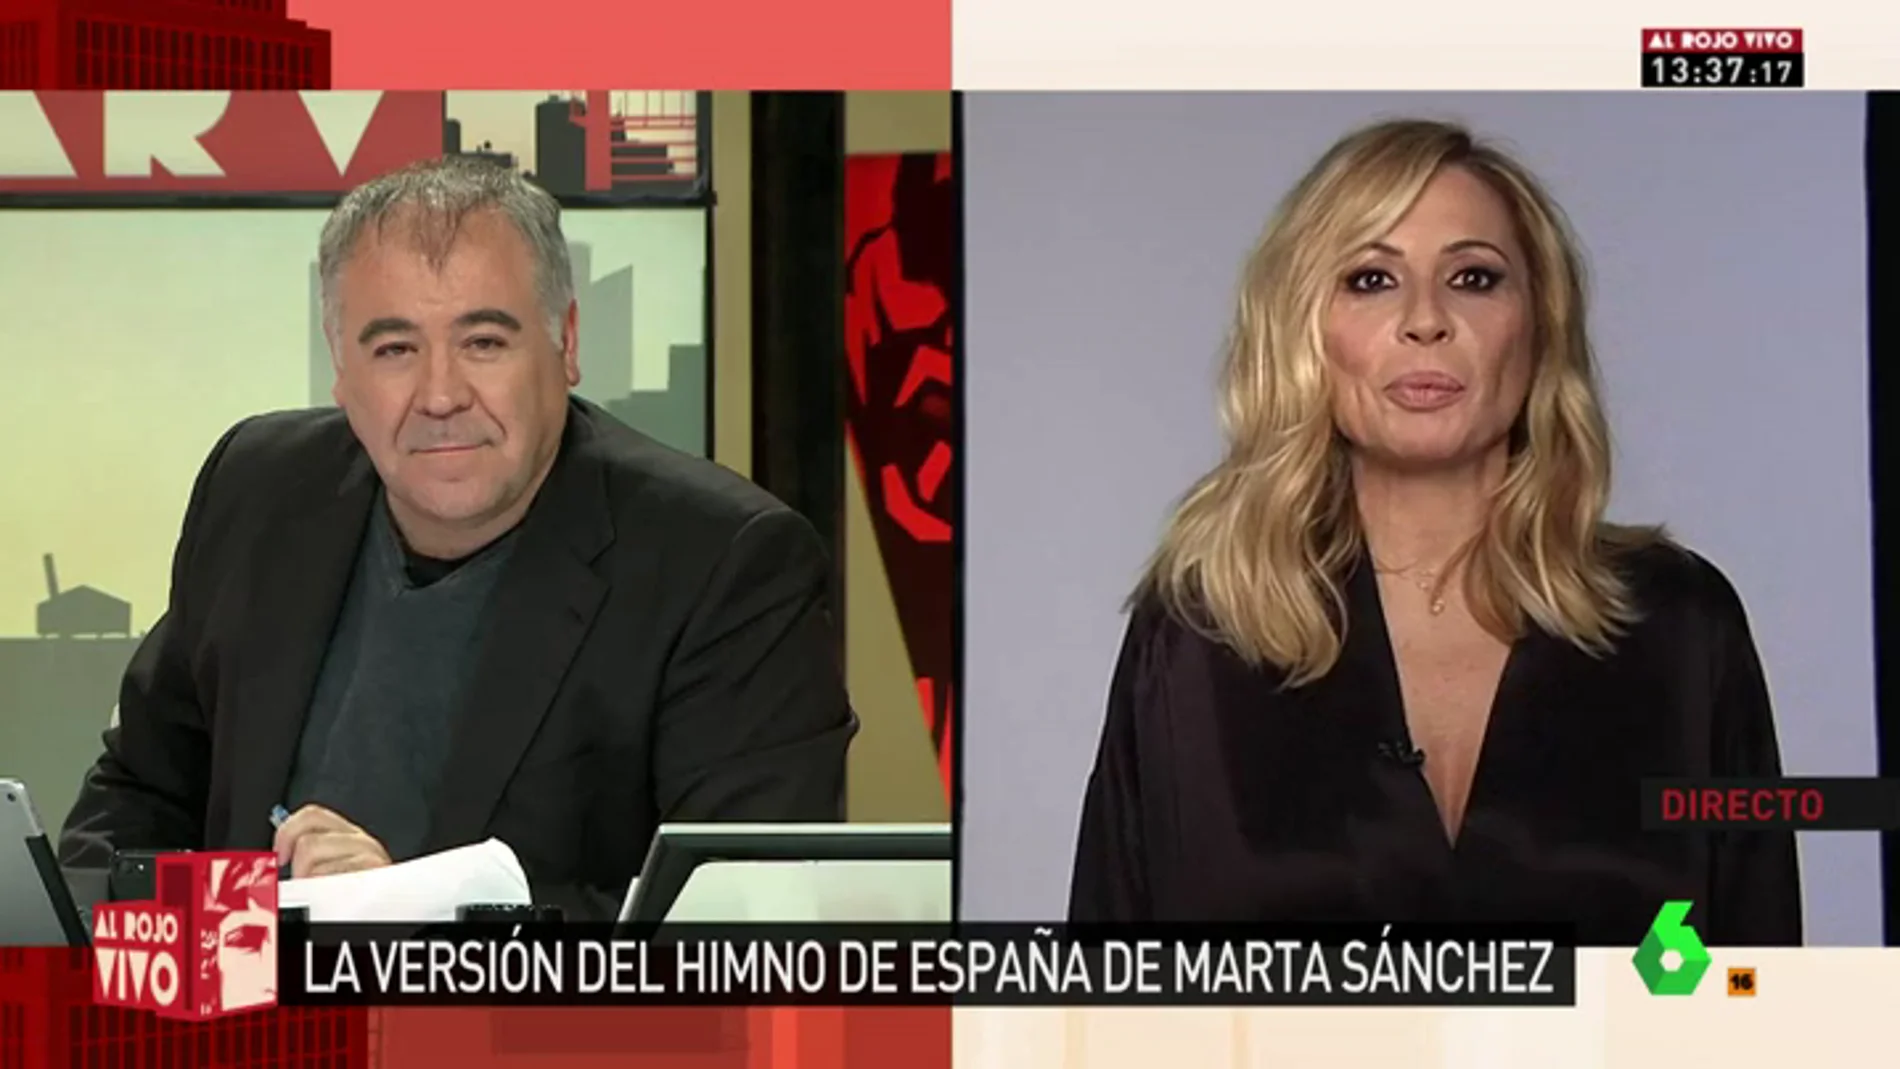 Marta Sánchez, sobre su versión del himno de España: "No tiene intención política. Solo quiero que esta letra emocione y una"